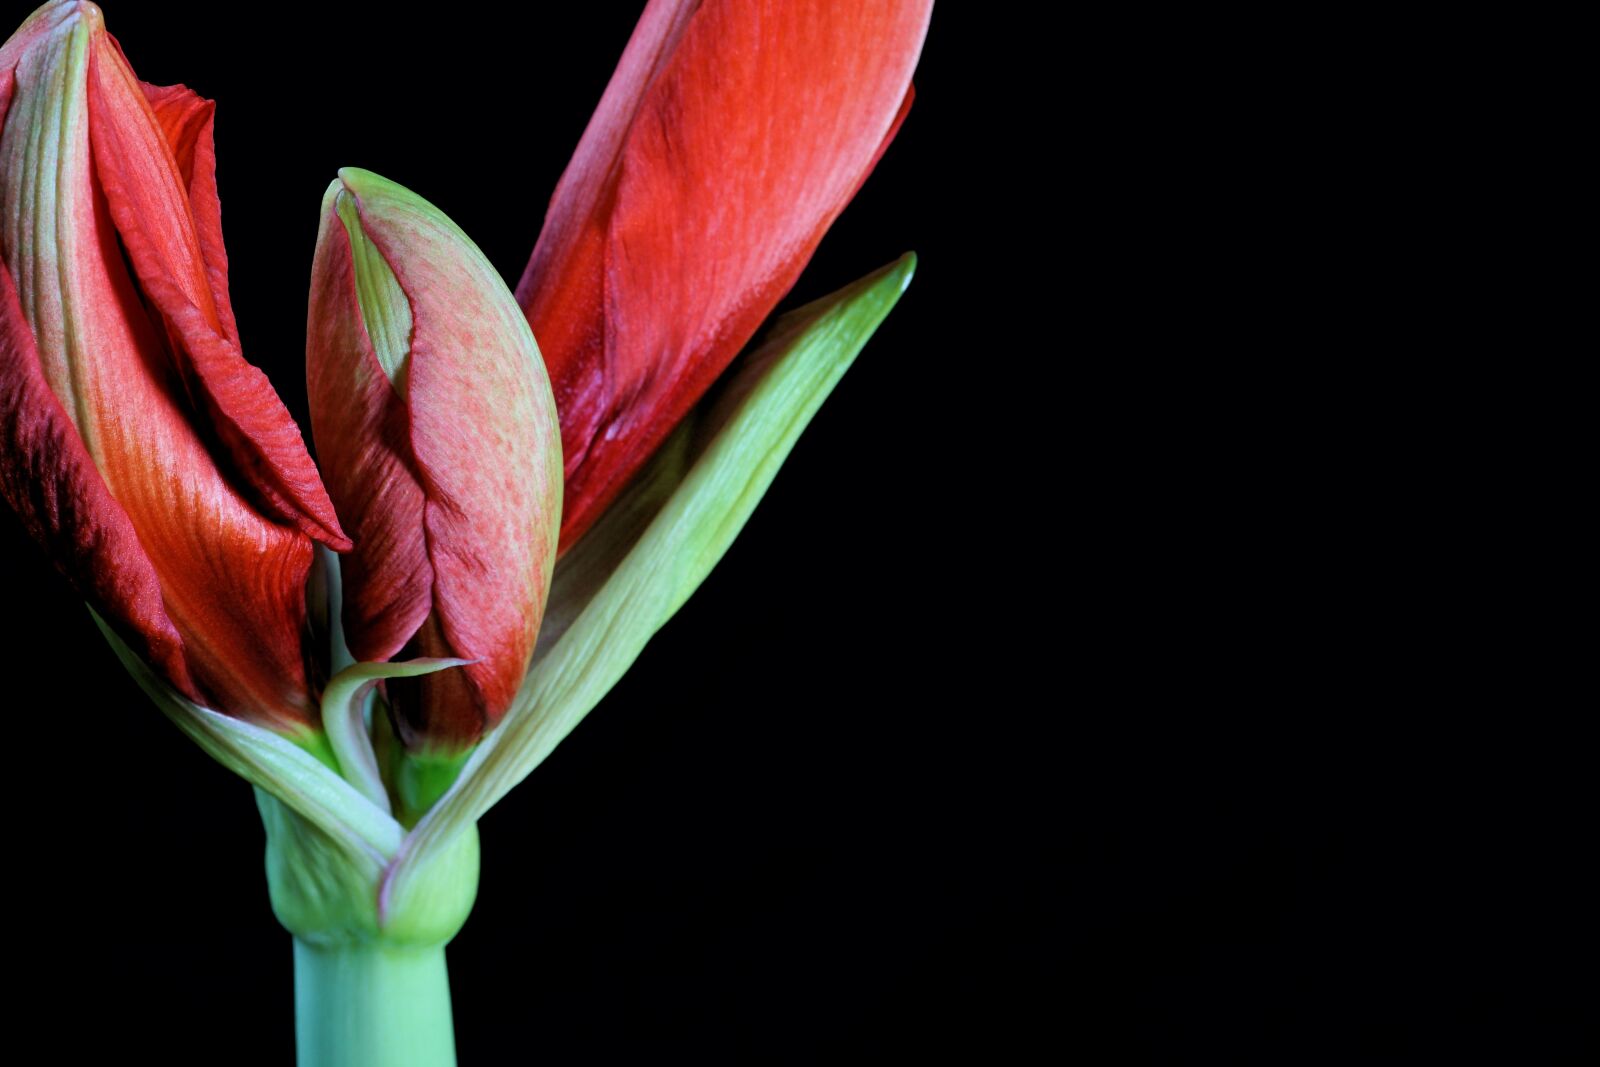 Sony E 30mm F3.5 Macro sample photo. Flower, amaryllis, nature photography